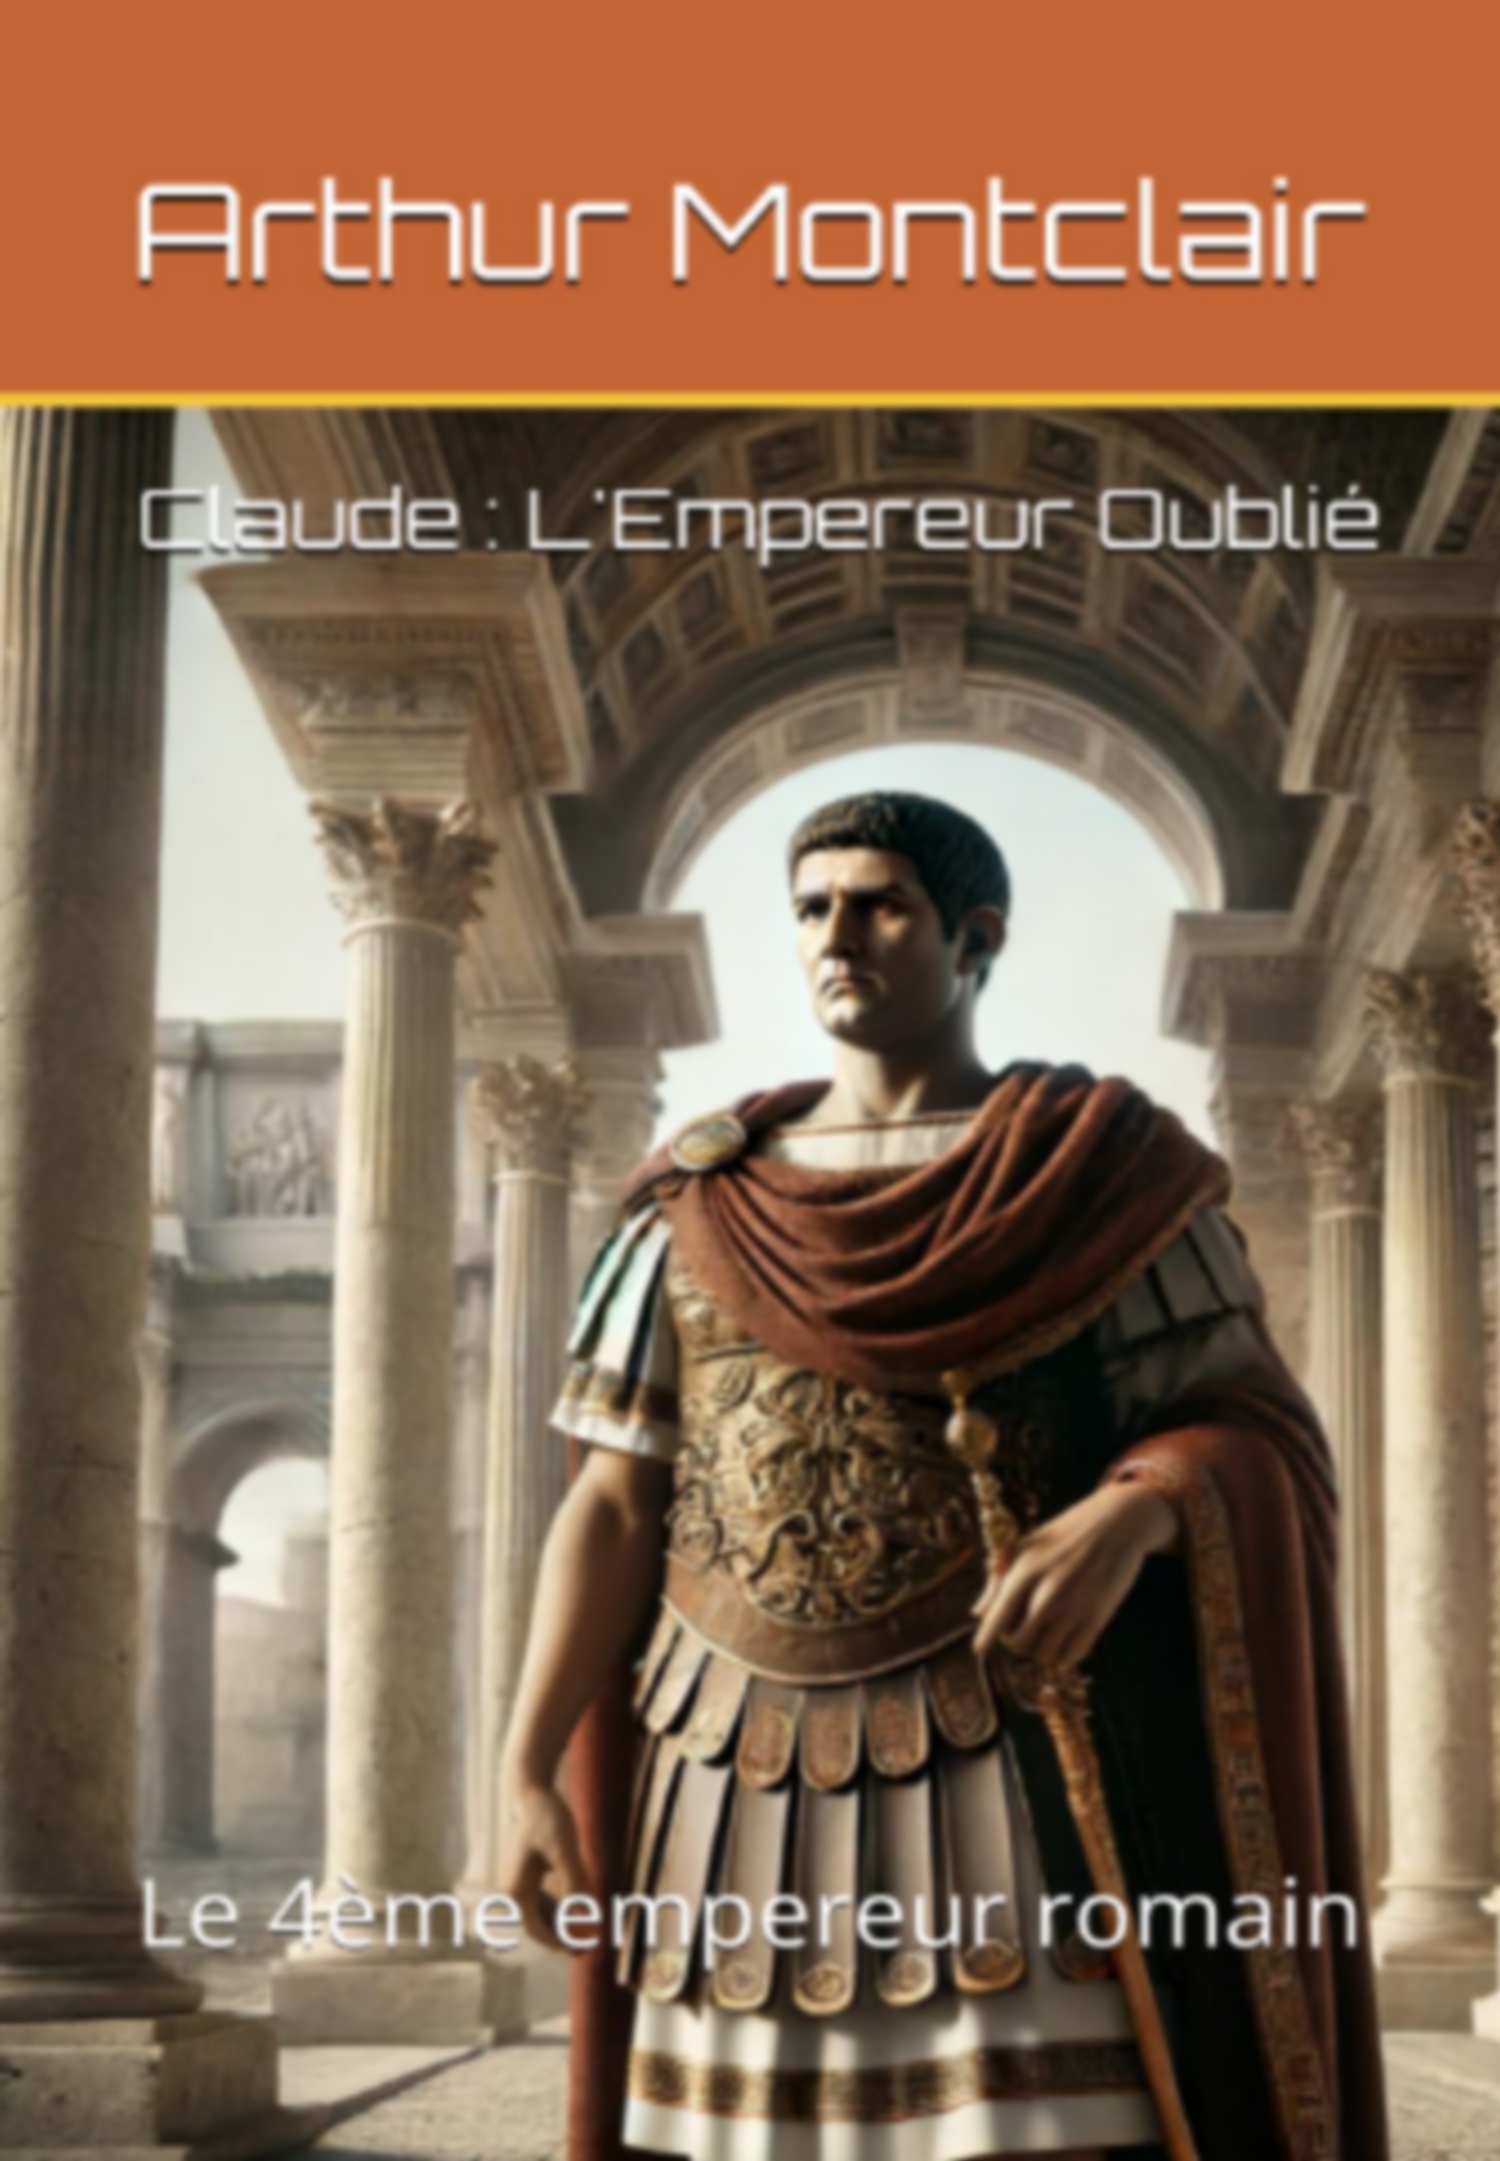 Claude : L'Empereur Oublié: Le 4ème empereur romain de Arthur Montclair